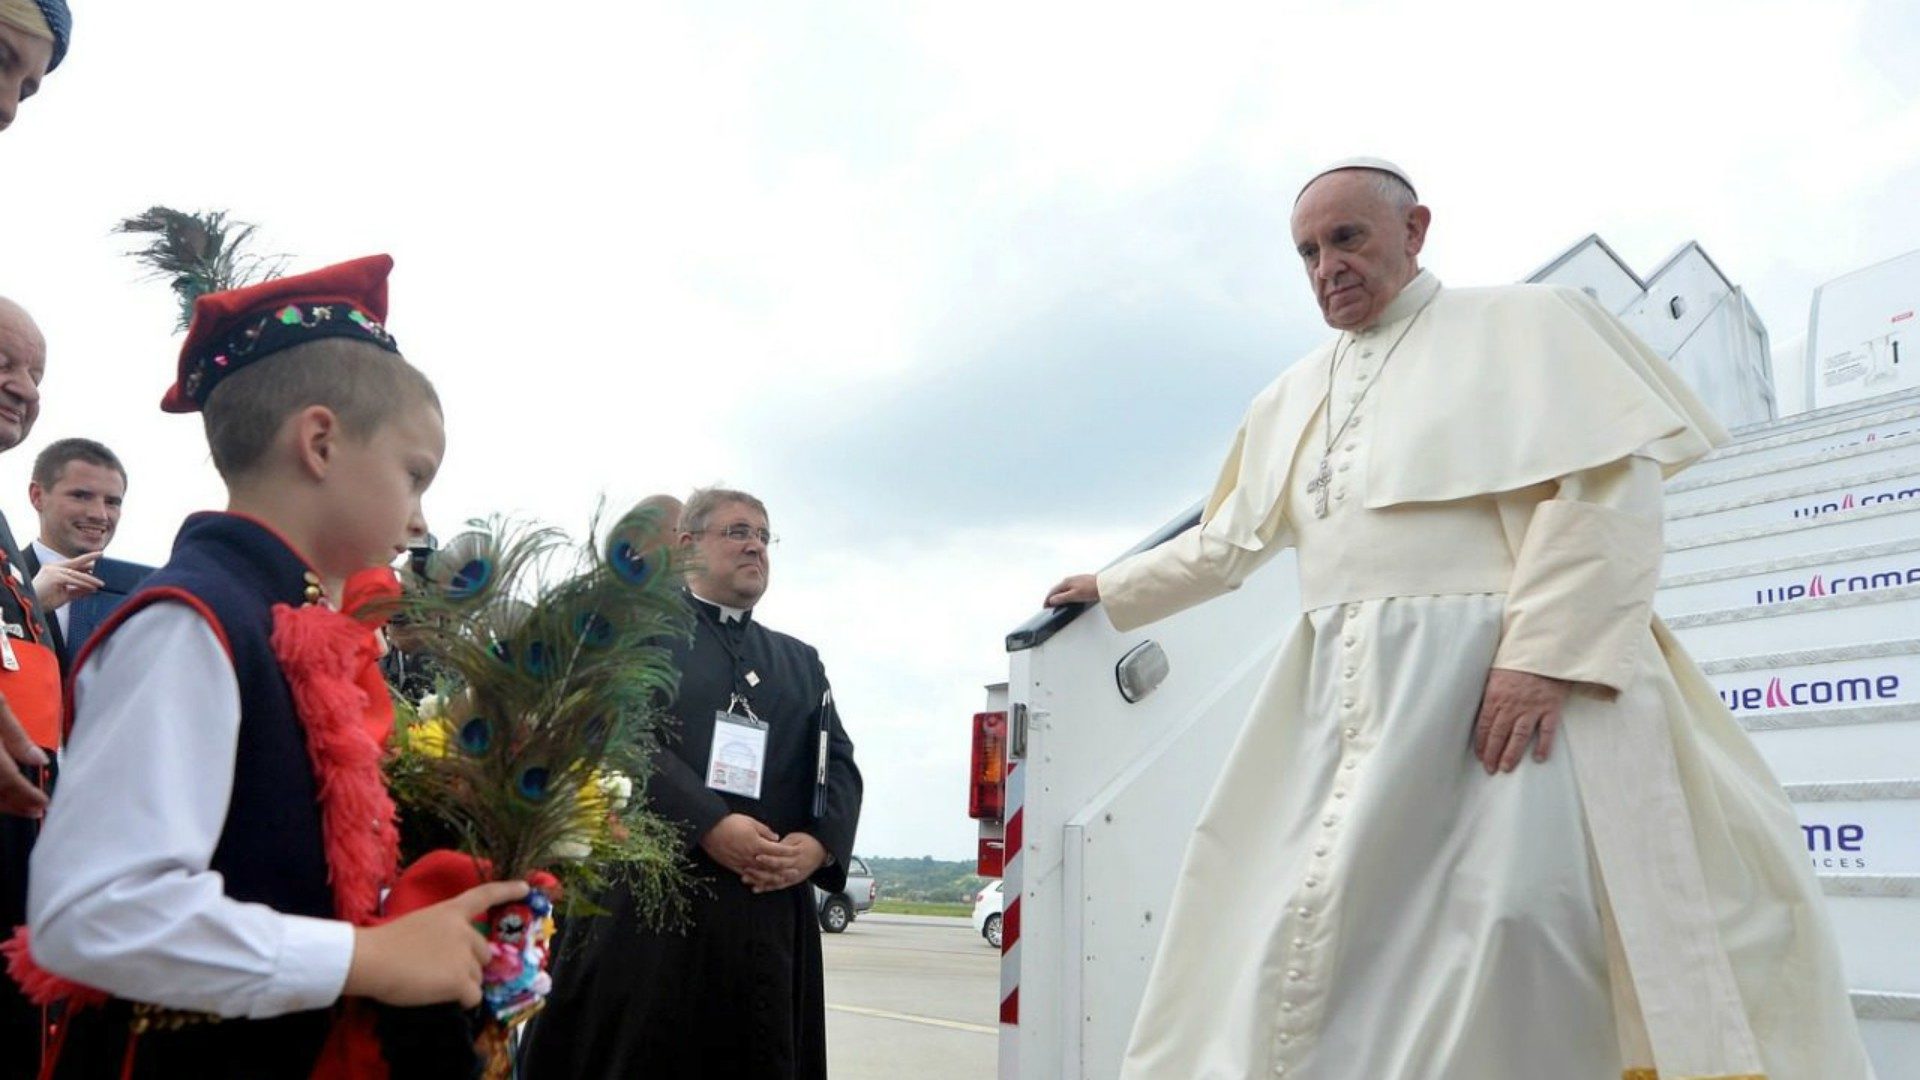 Le pape François est un grand voyageur | ici en Pologne en 2016 © Flickr/Mazur/catholicnews.org.uk
/CC BY-NC-SA 2.0)